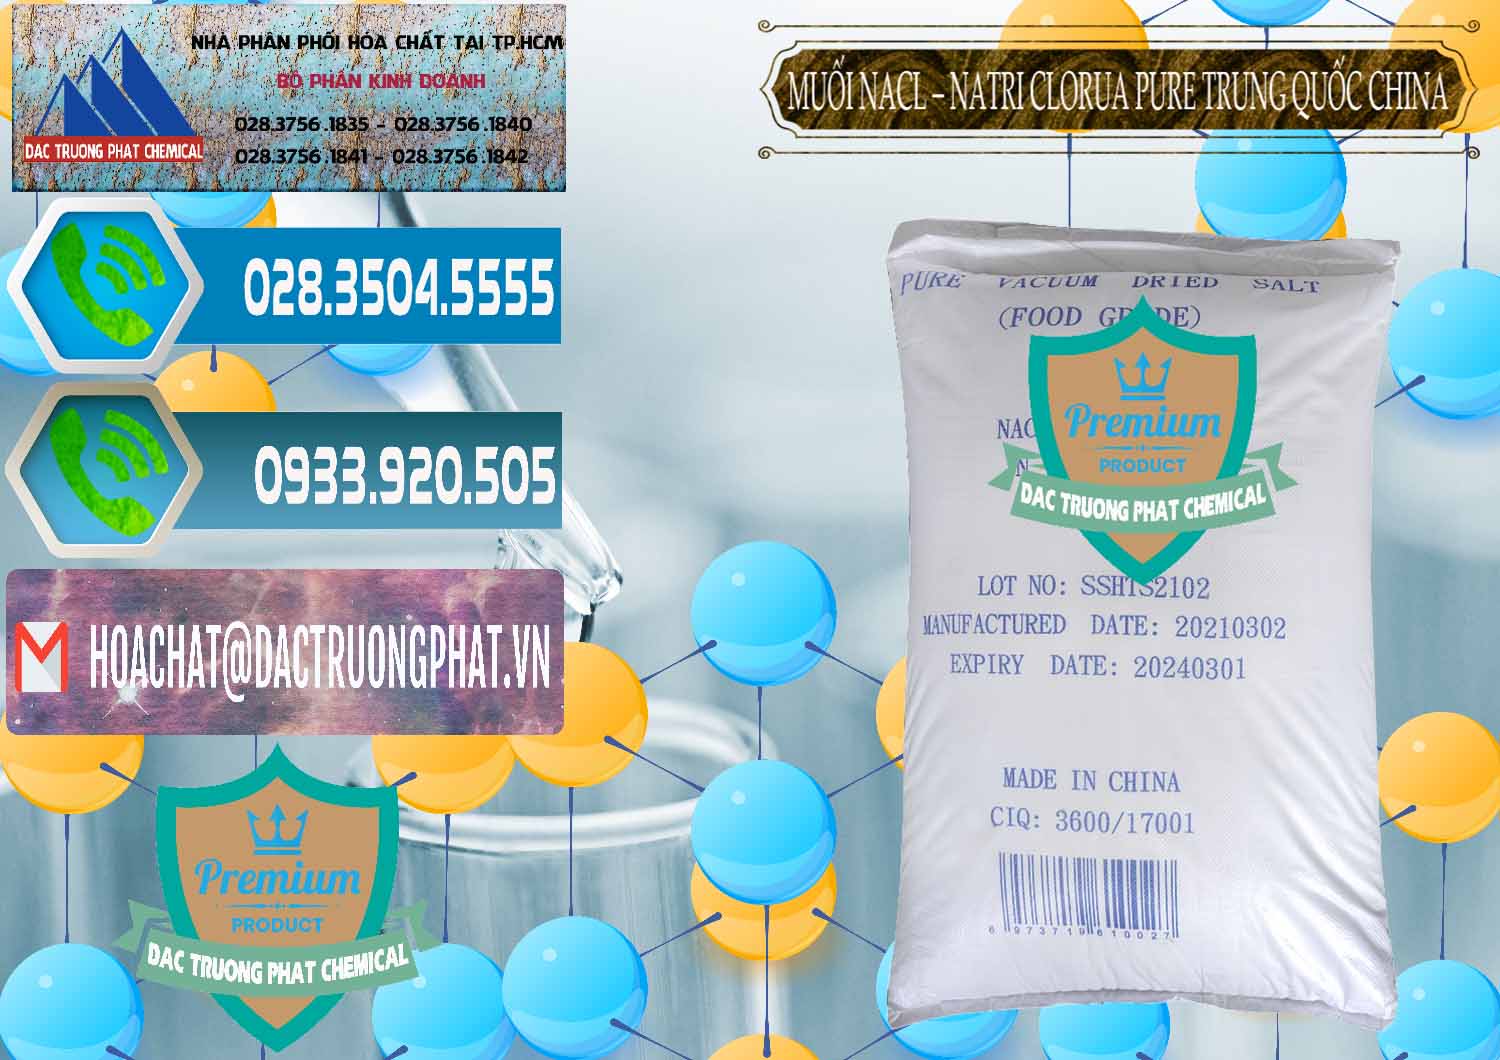 Công ty chuyên bán - cung cấp Muối NaCL – Sodium Chloride Pure Trung Quốc China - 0230 - Cty chuyên cung cấp _ kinh doanh hóa chất tại TP.HCM - congtyhoachat.net